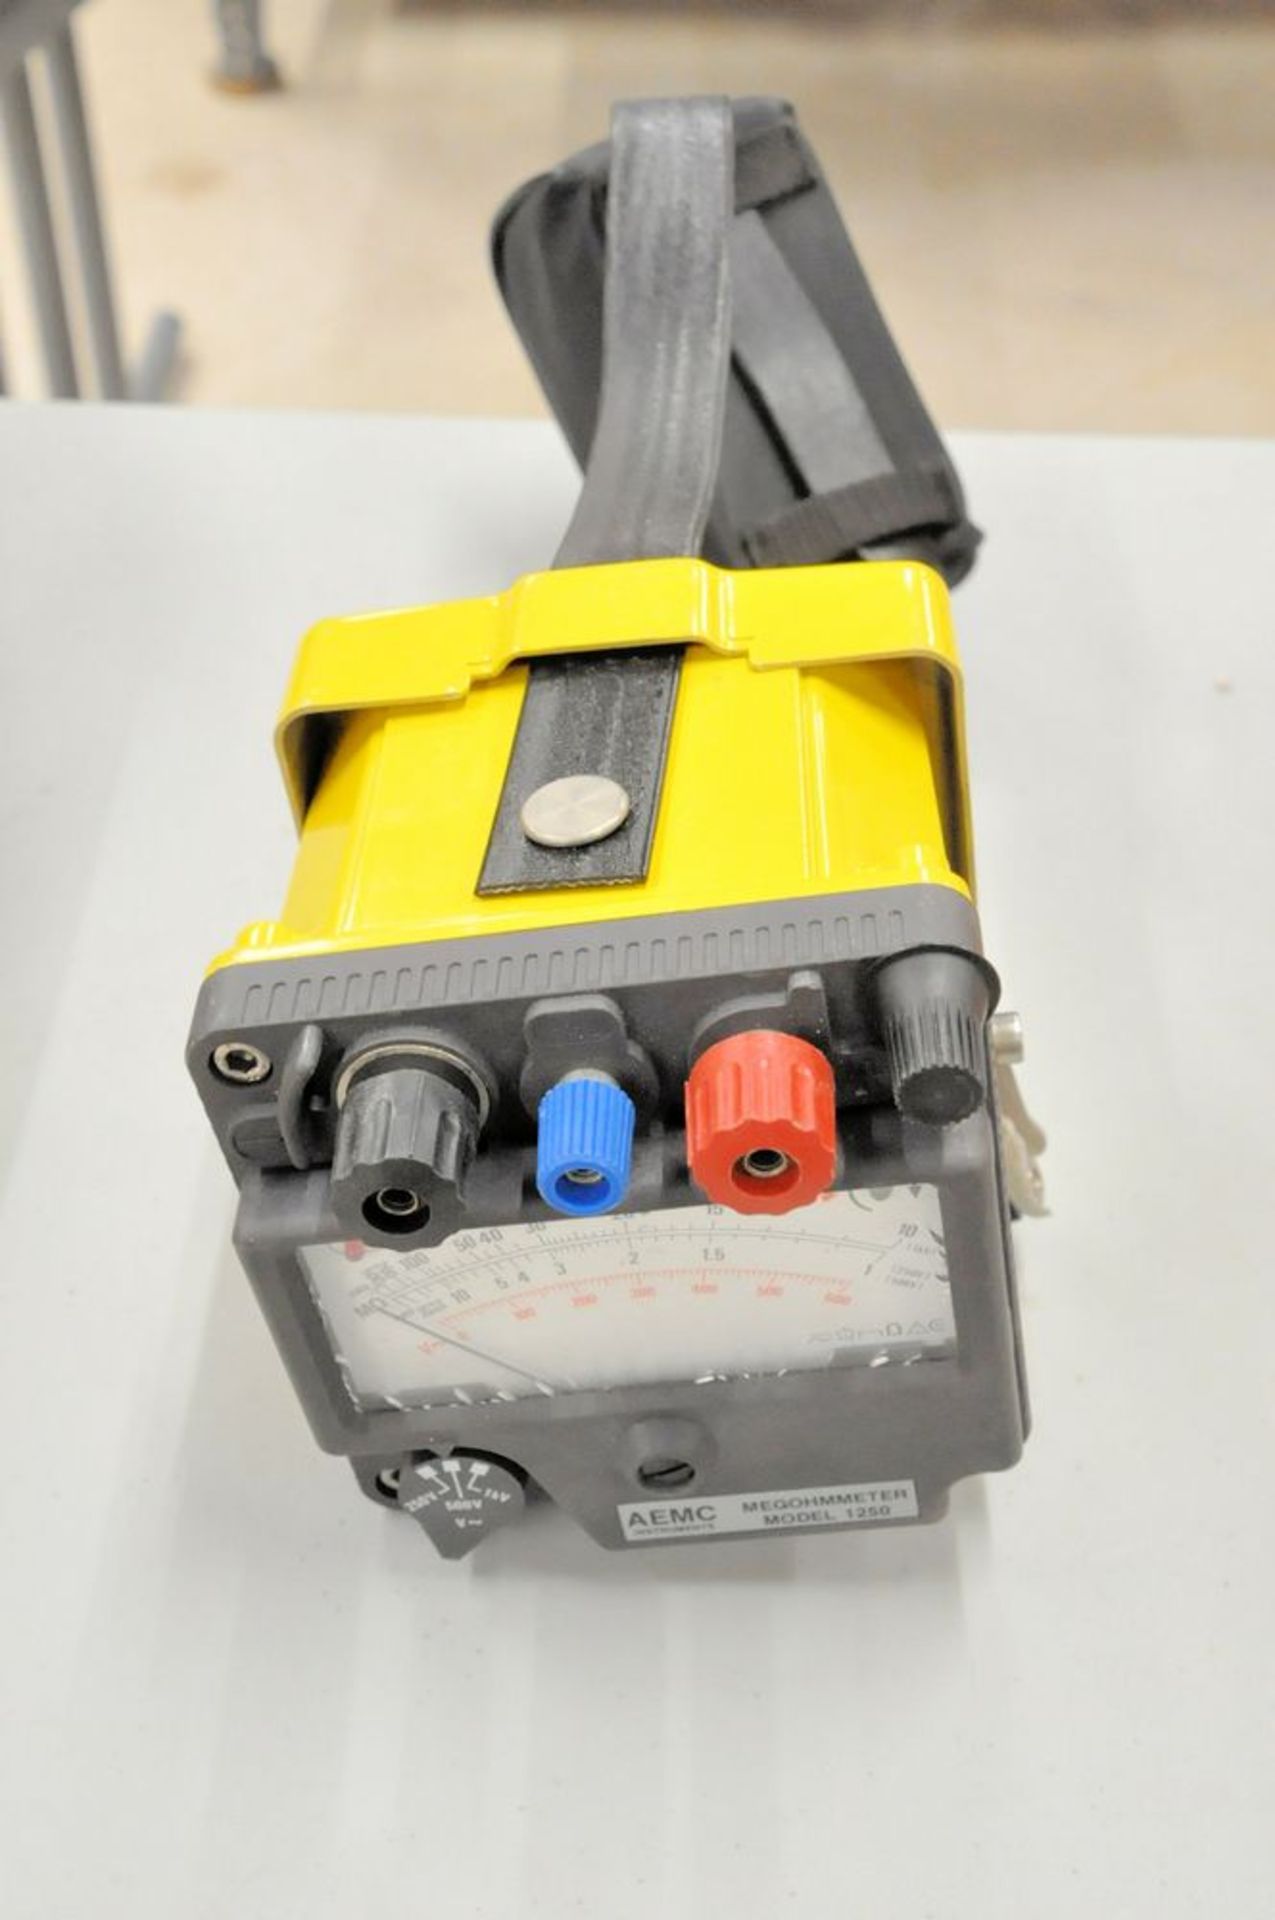 Lot-Topaka Floor Slip Tester, Fluke Amp Meter, Sure Test Branch Circuit Analyzer, AEMC Model 1250 - Image 5 of 6